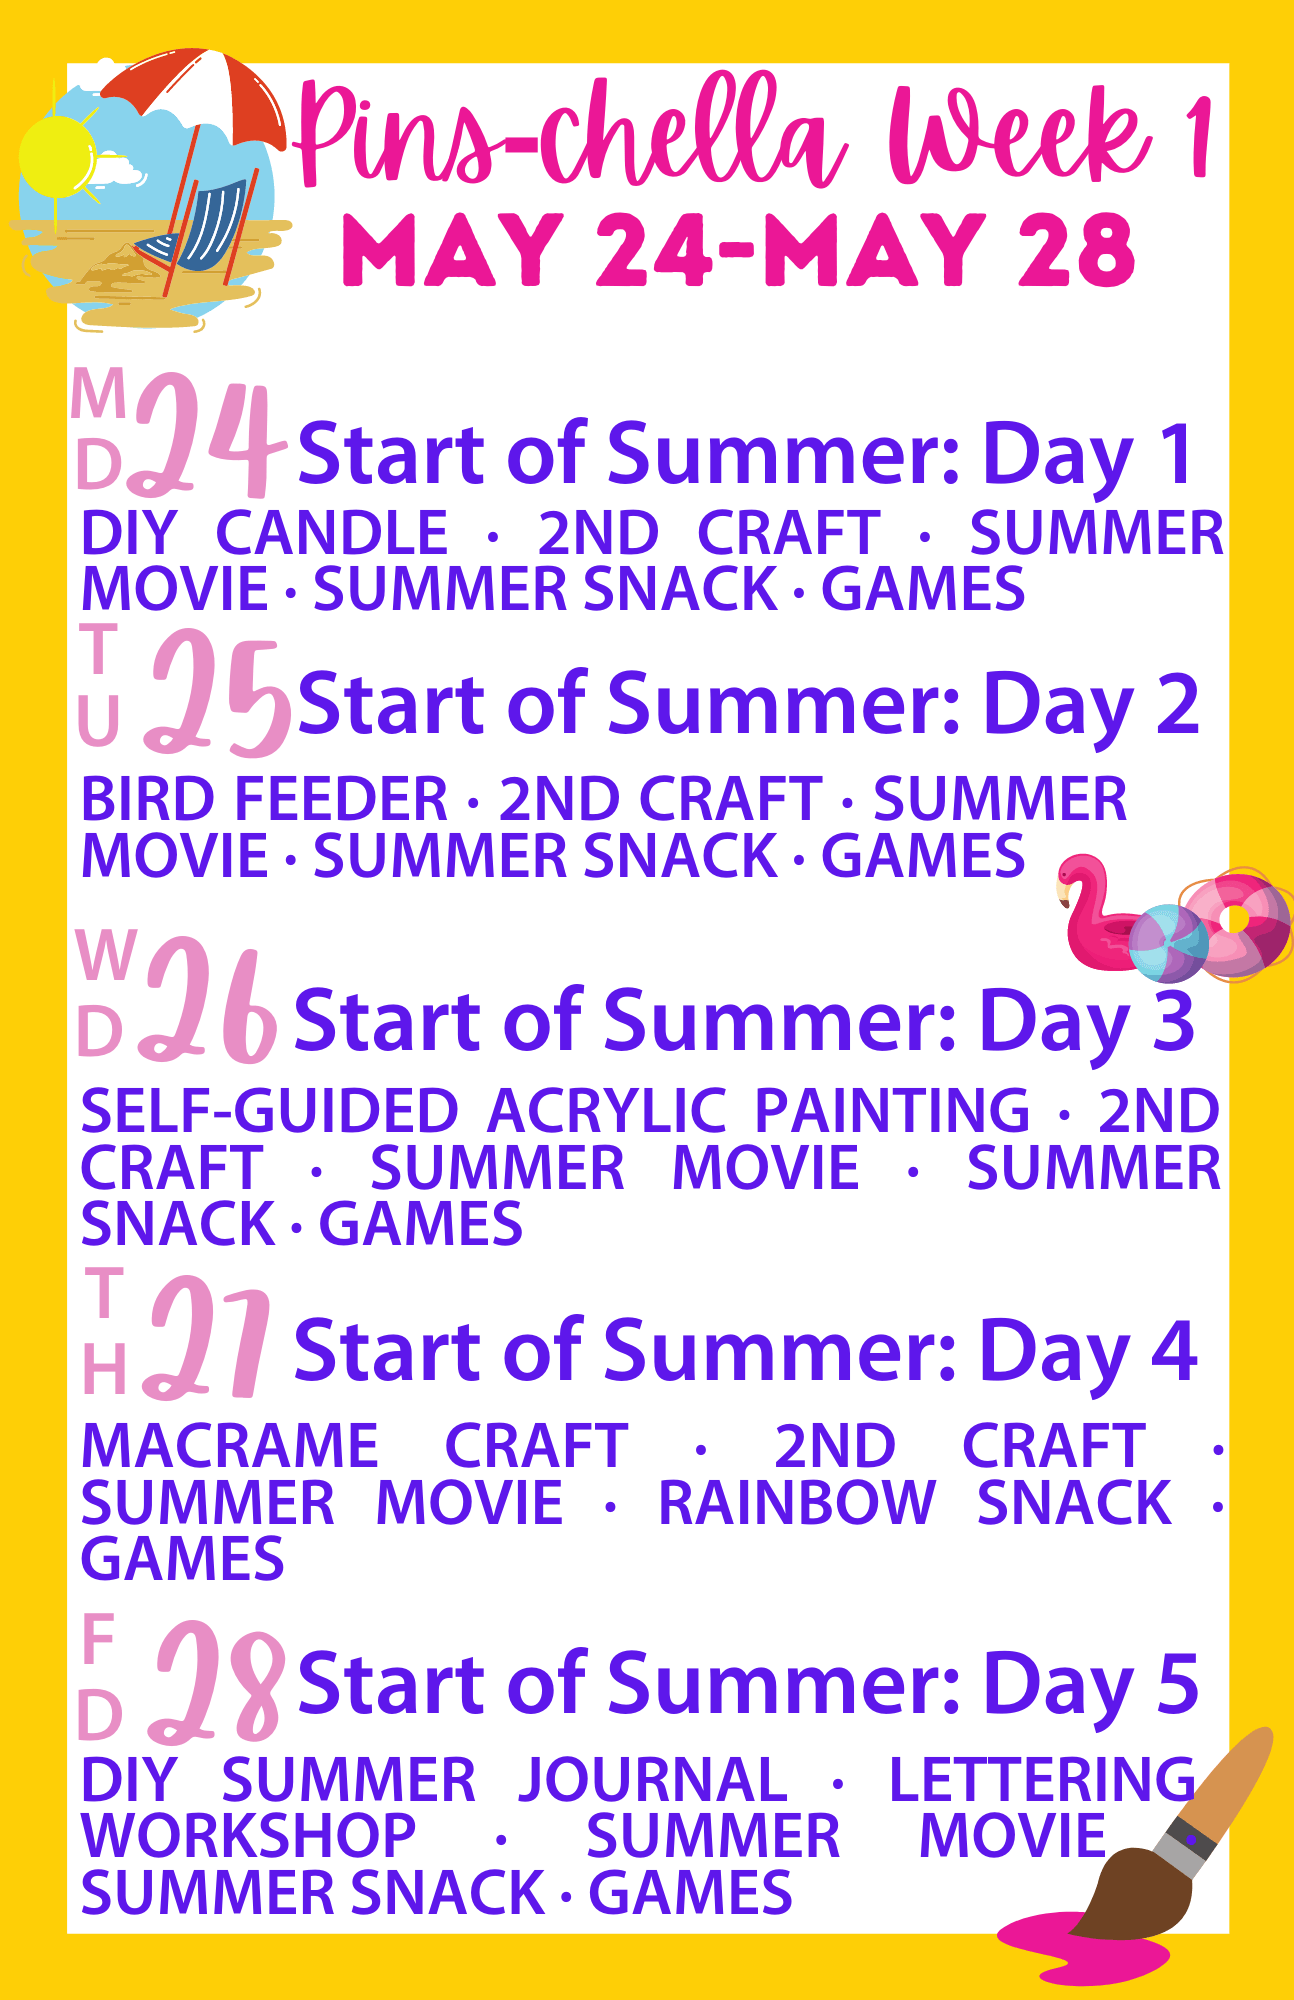 Summer Camp: Start of Summer